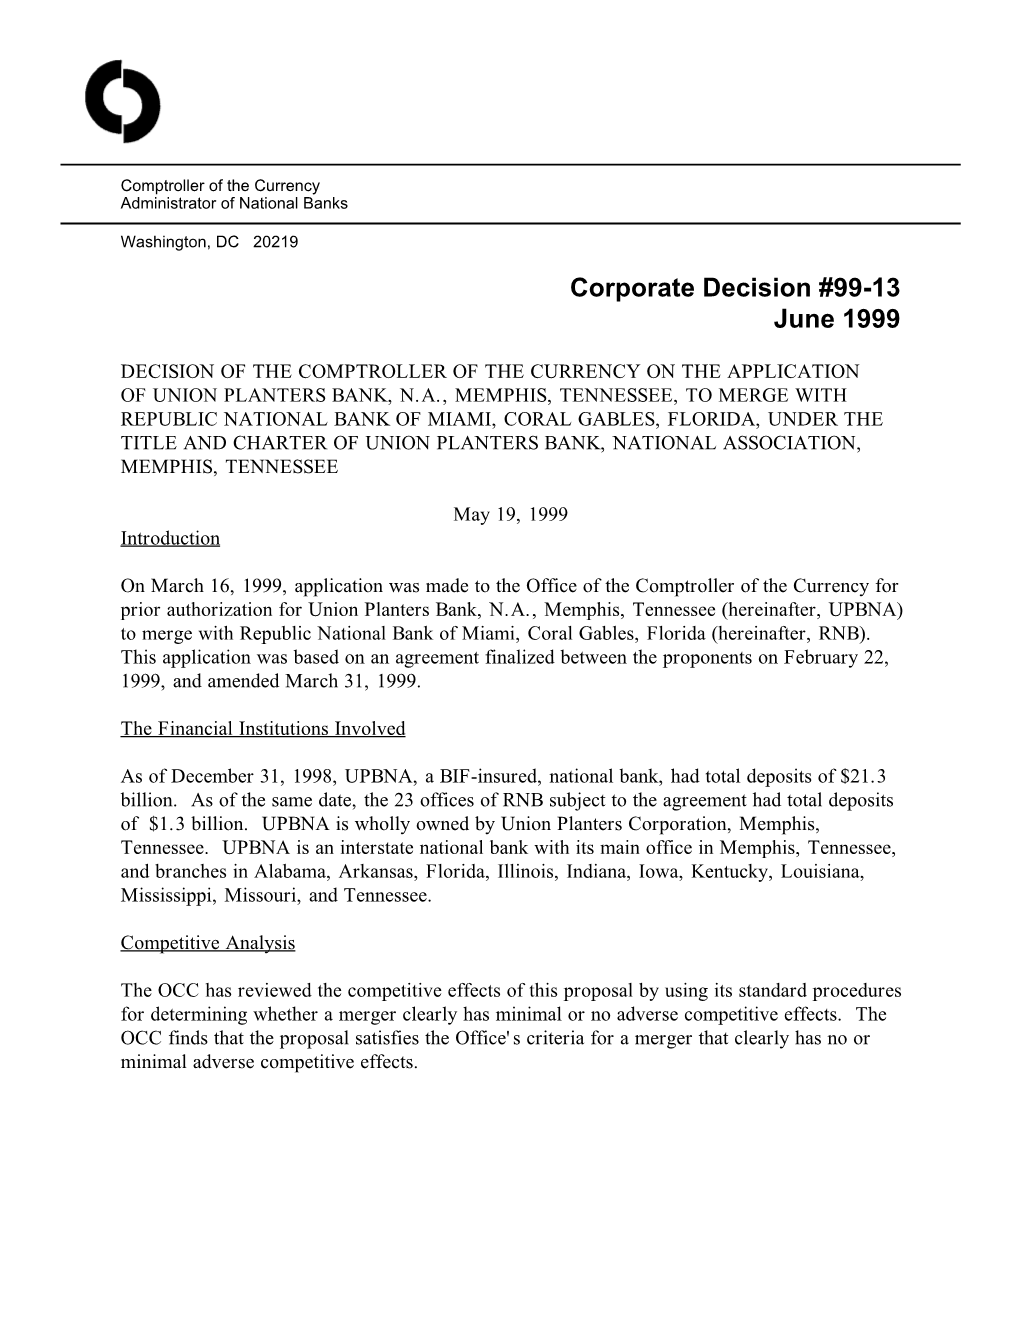 Corporate Decision #99-13 June 1999